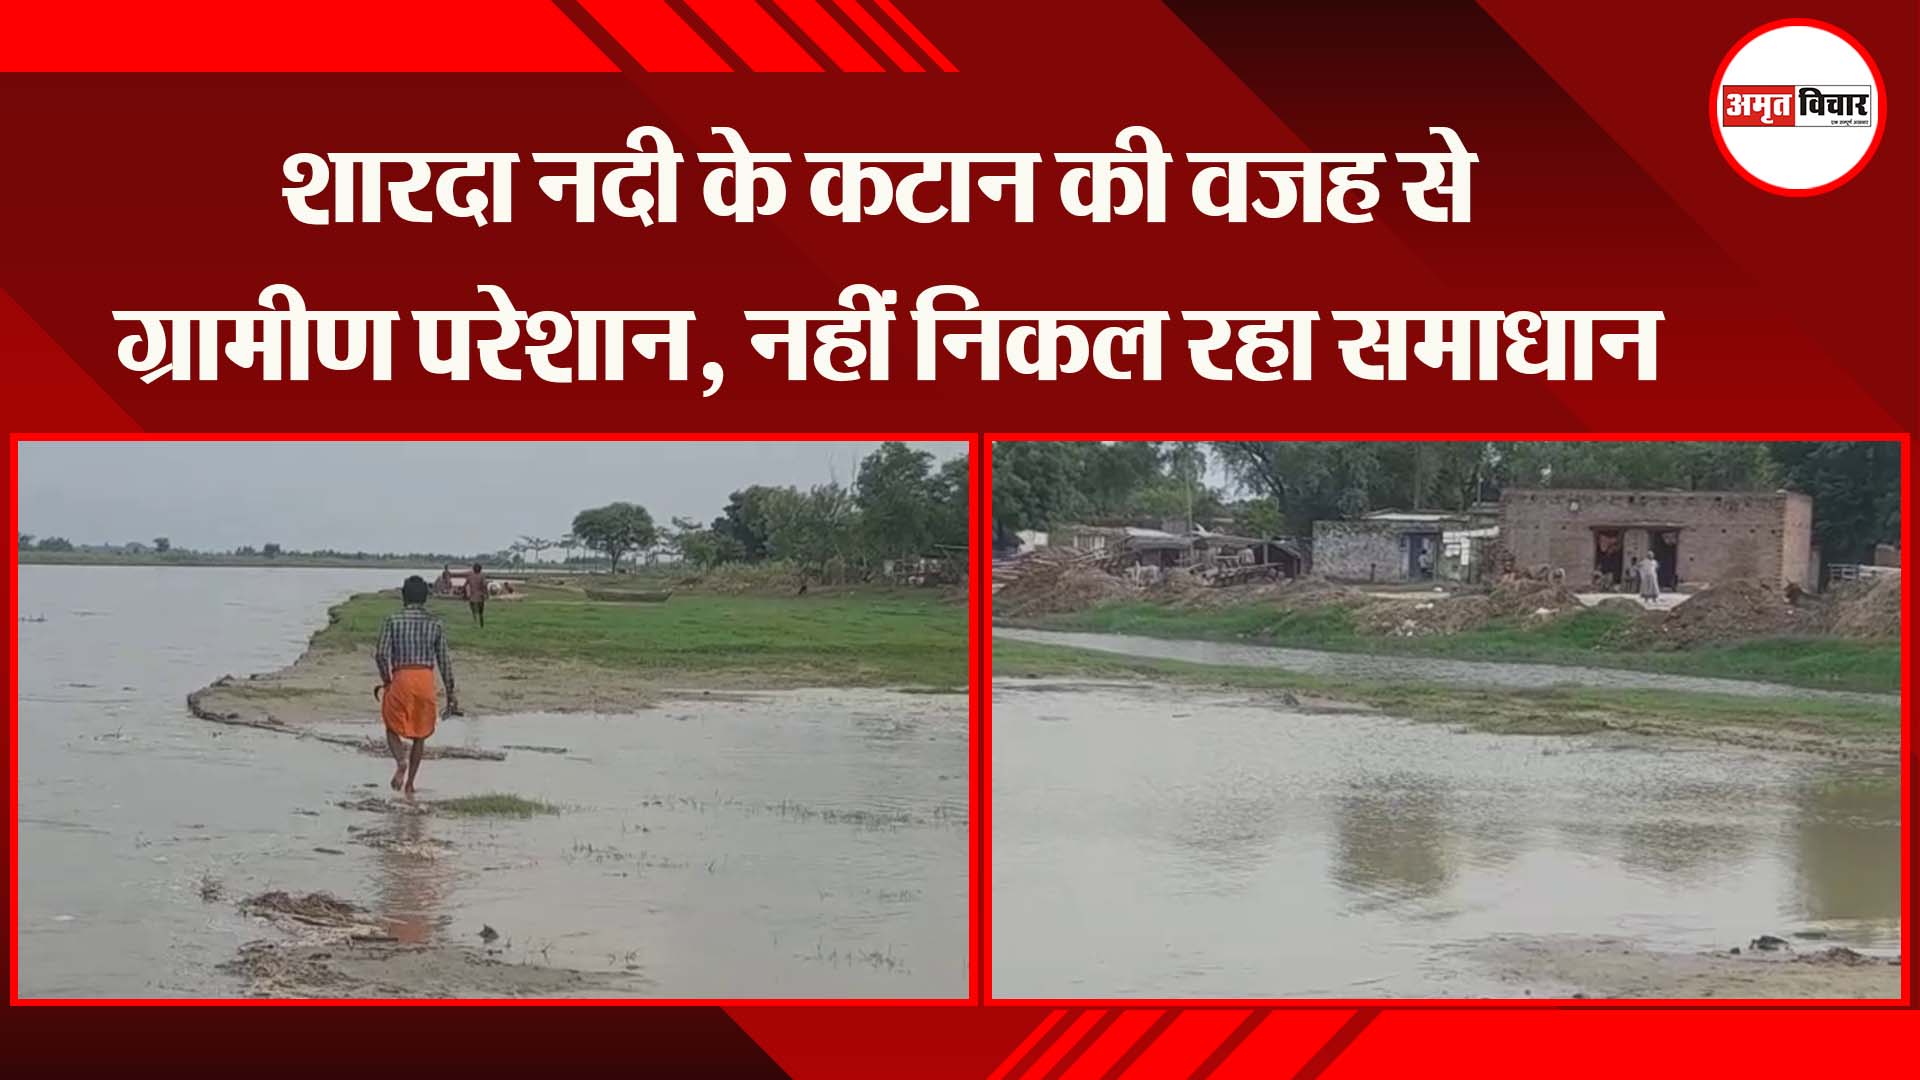 सीतापुर: शारदा नदी के कटान की वजह से ग्रामीण परेशान, नहीं निकल रहा समाधान